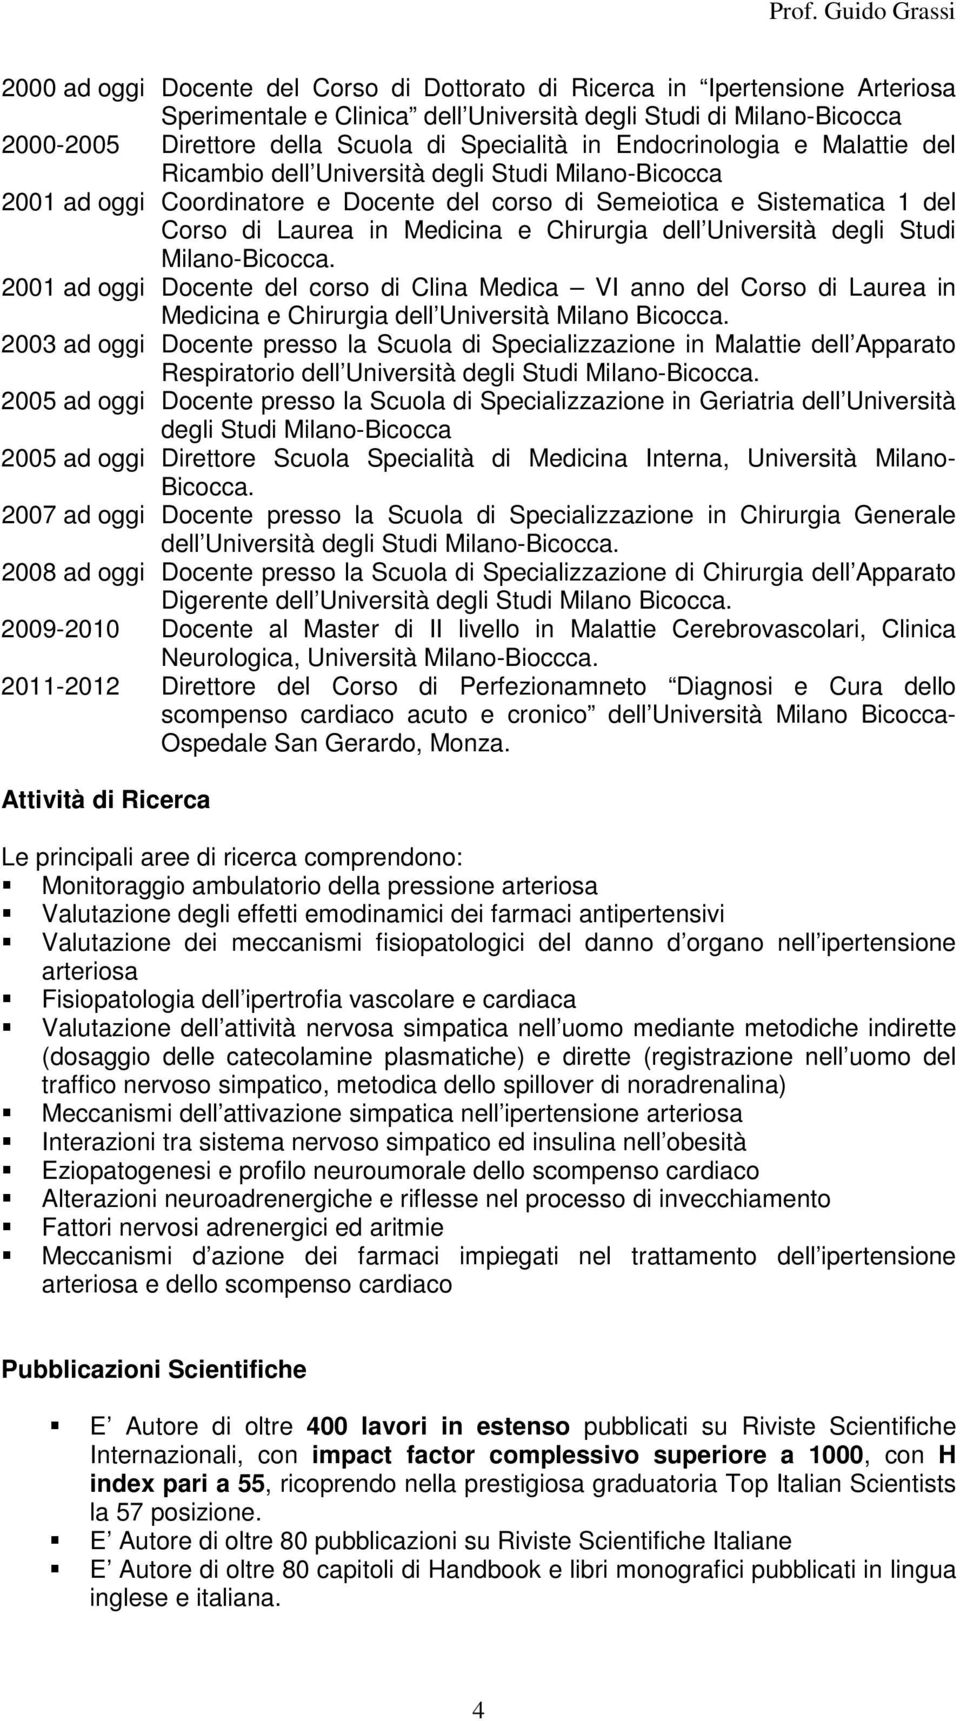 Milano-Bicocca. 2001 ad oggi Docente del corso di Clina Medica VI anno del Corso di Laurea in Medicina e Chirurgia dell Università Milano Bicocca.